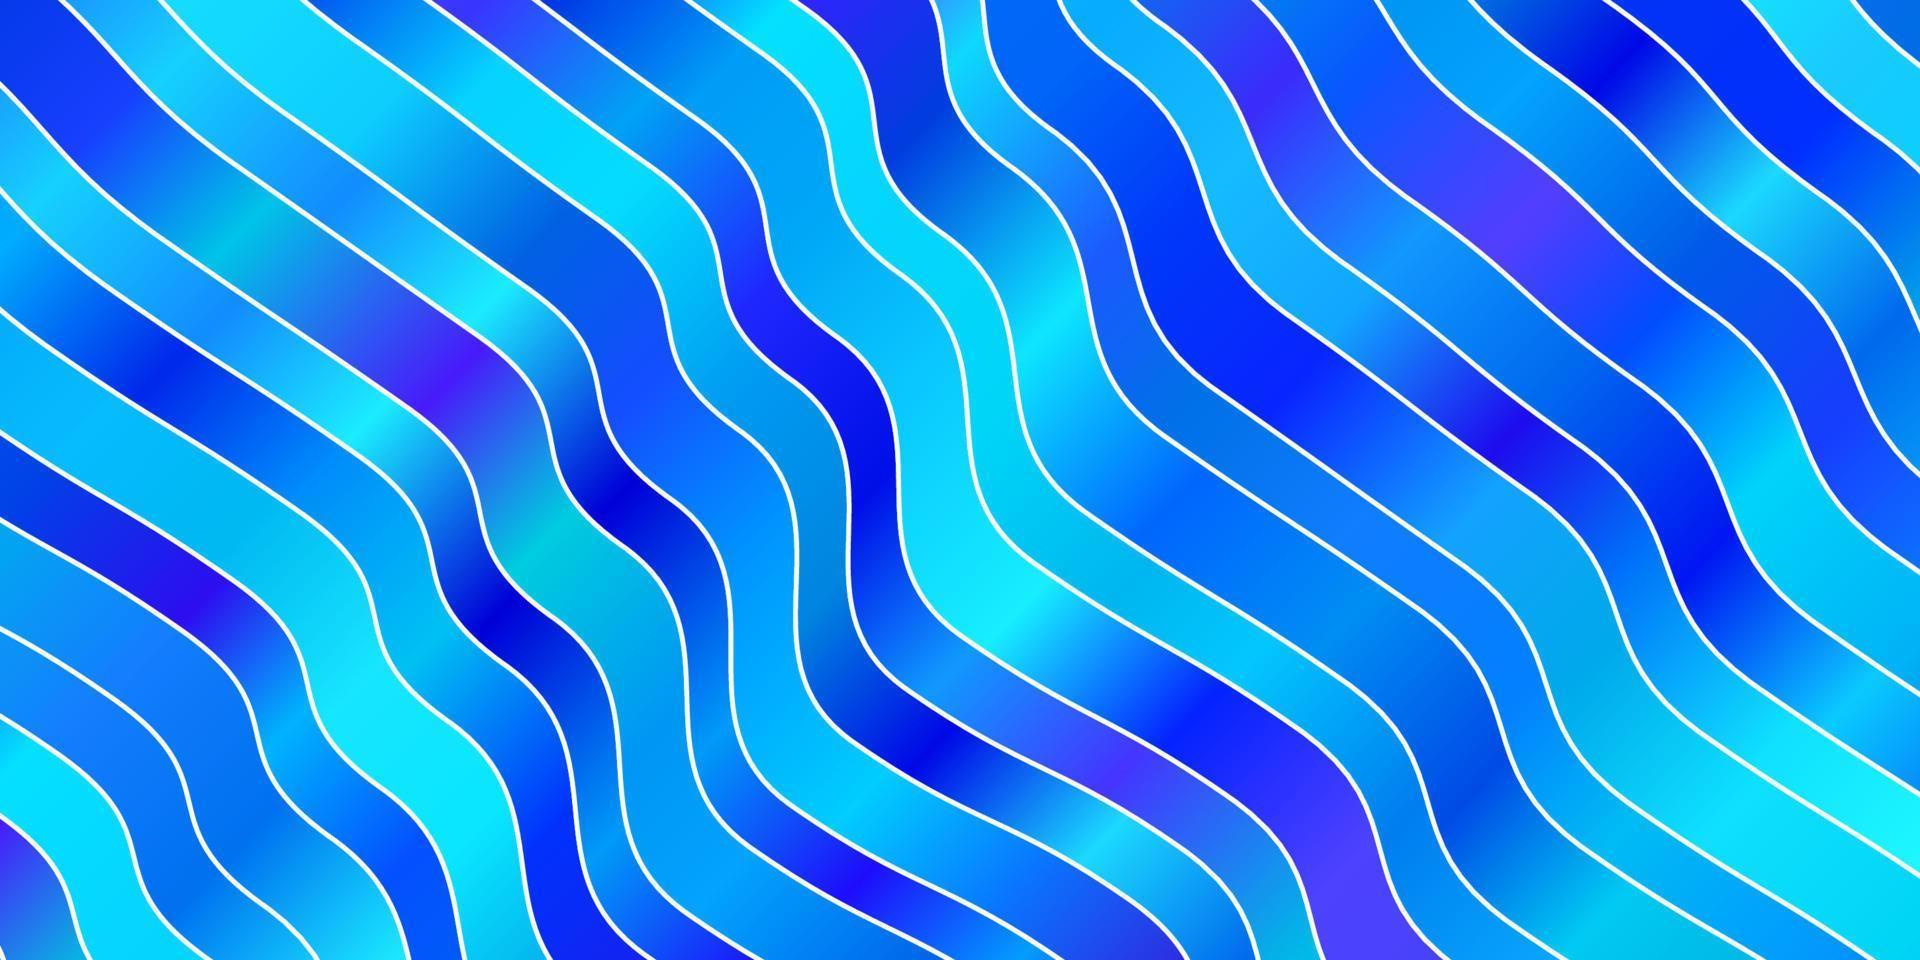 hellrosa, blaue Vektorschablone mit Kurven. vektor